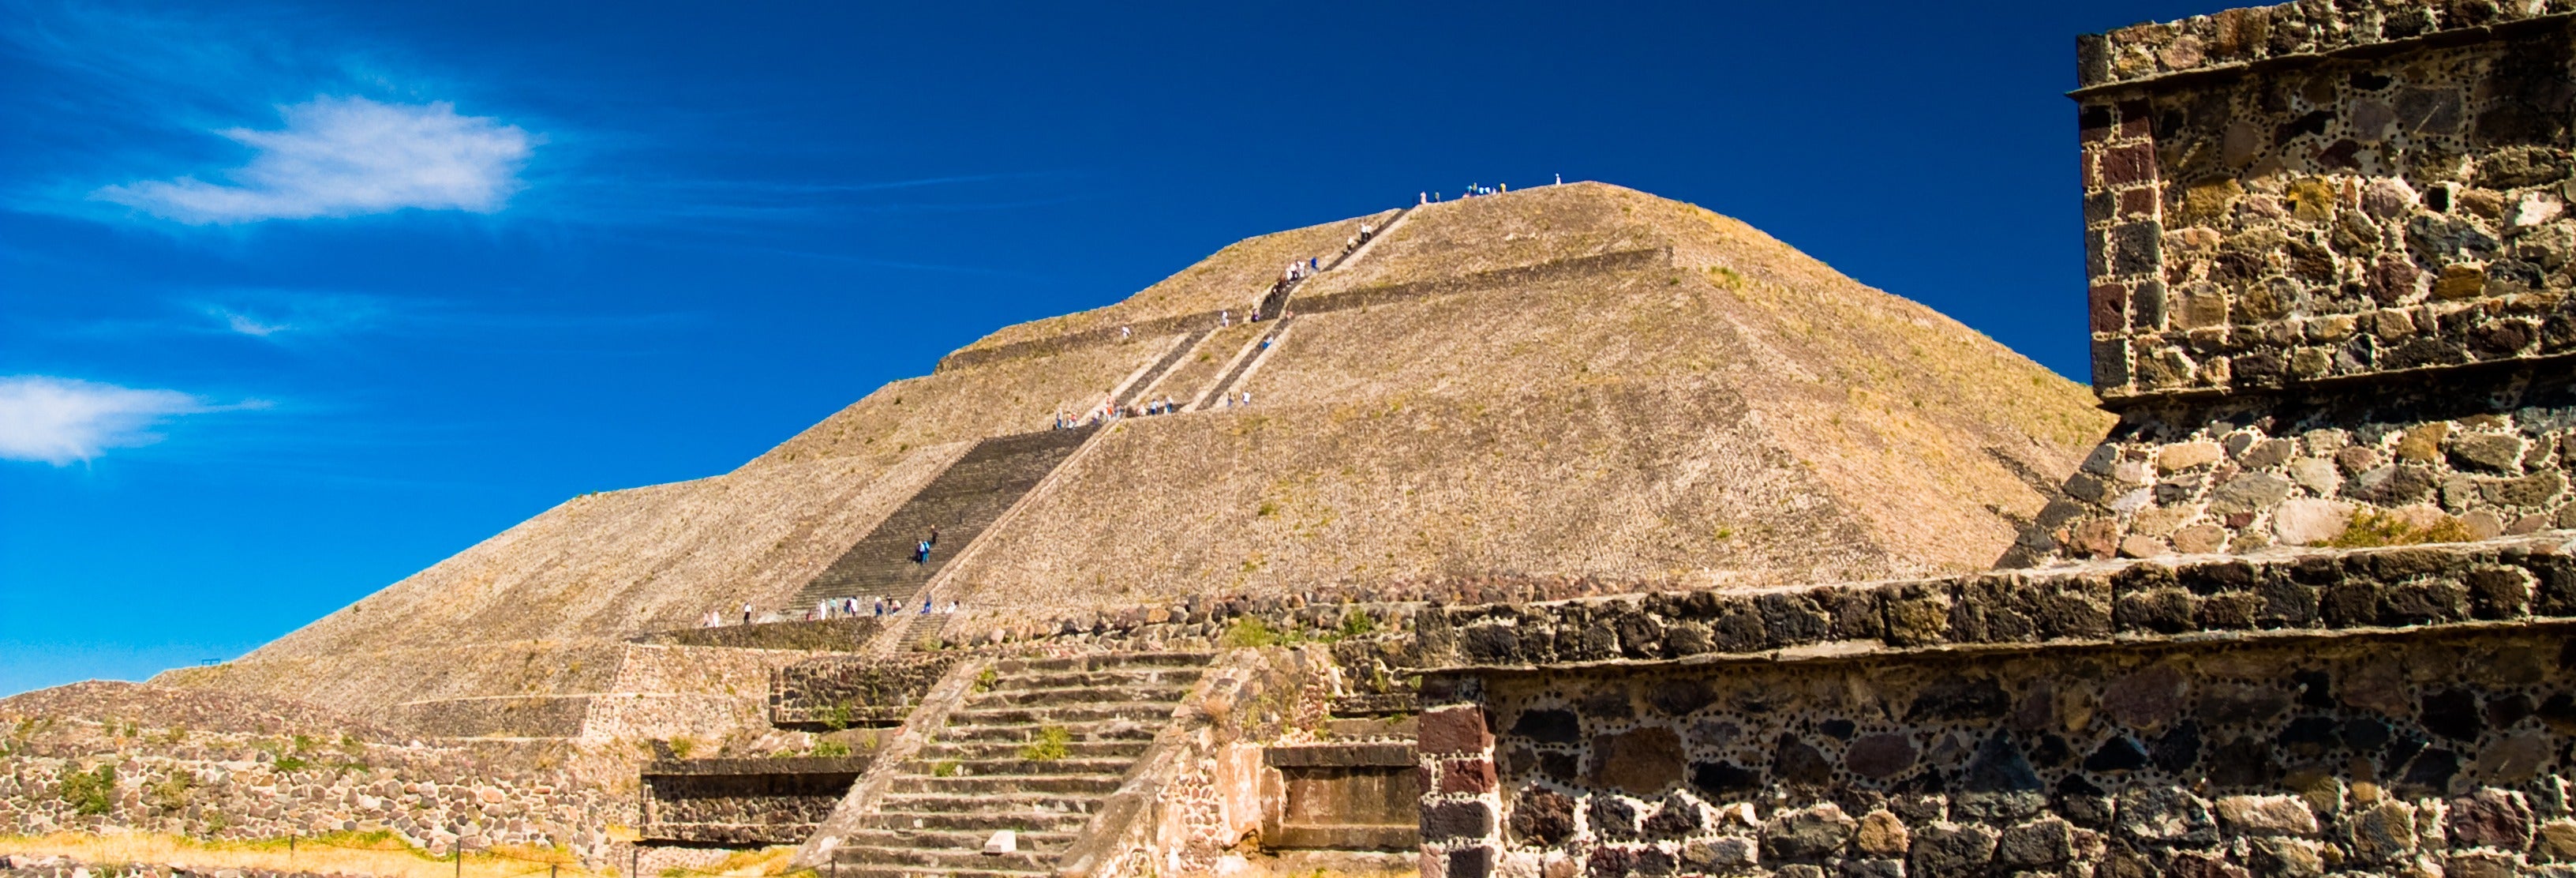 Teotihuacán, Basílica de Guadalupe e Tlatelolco